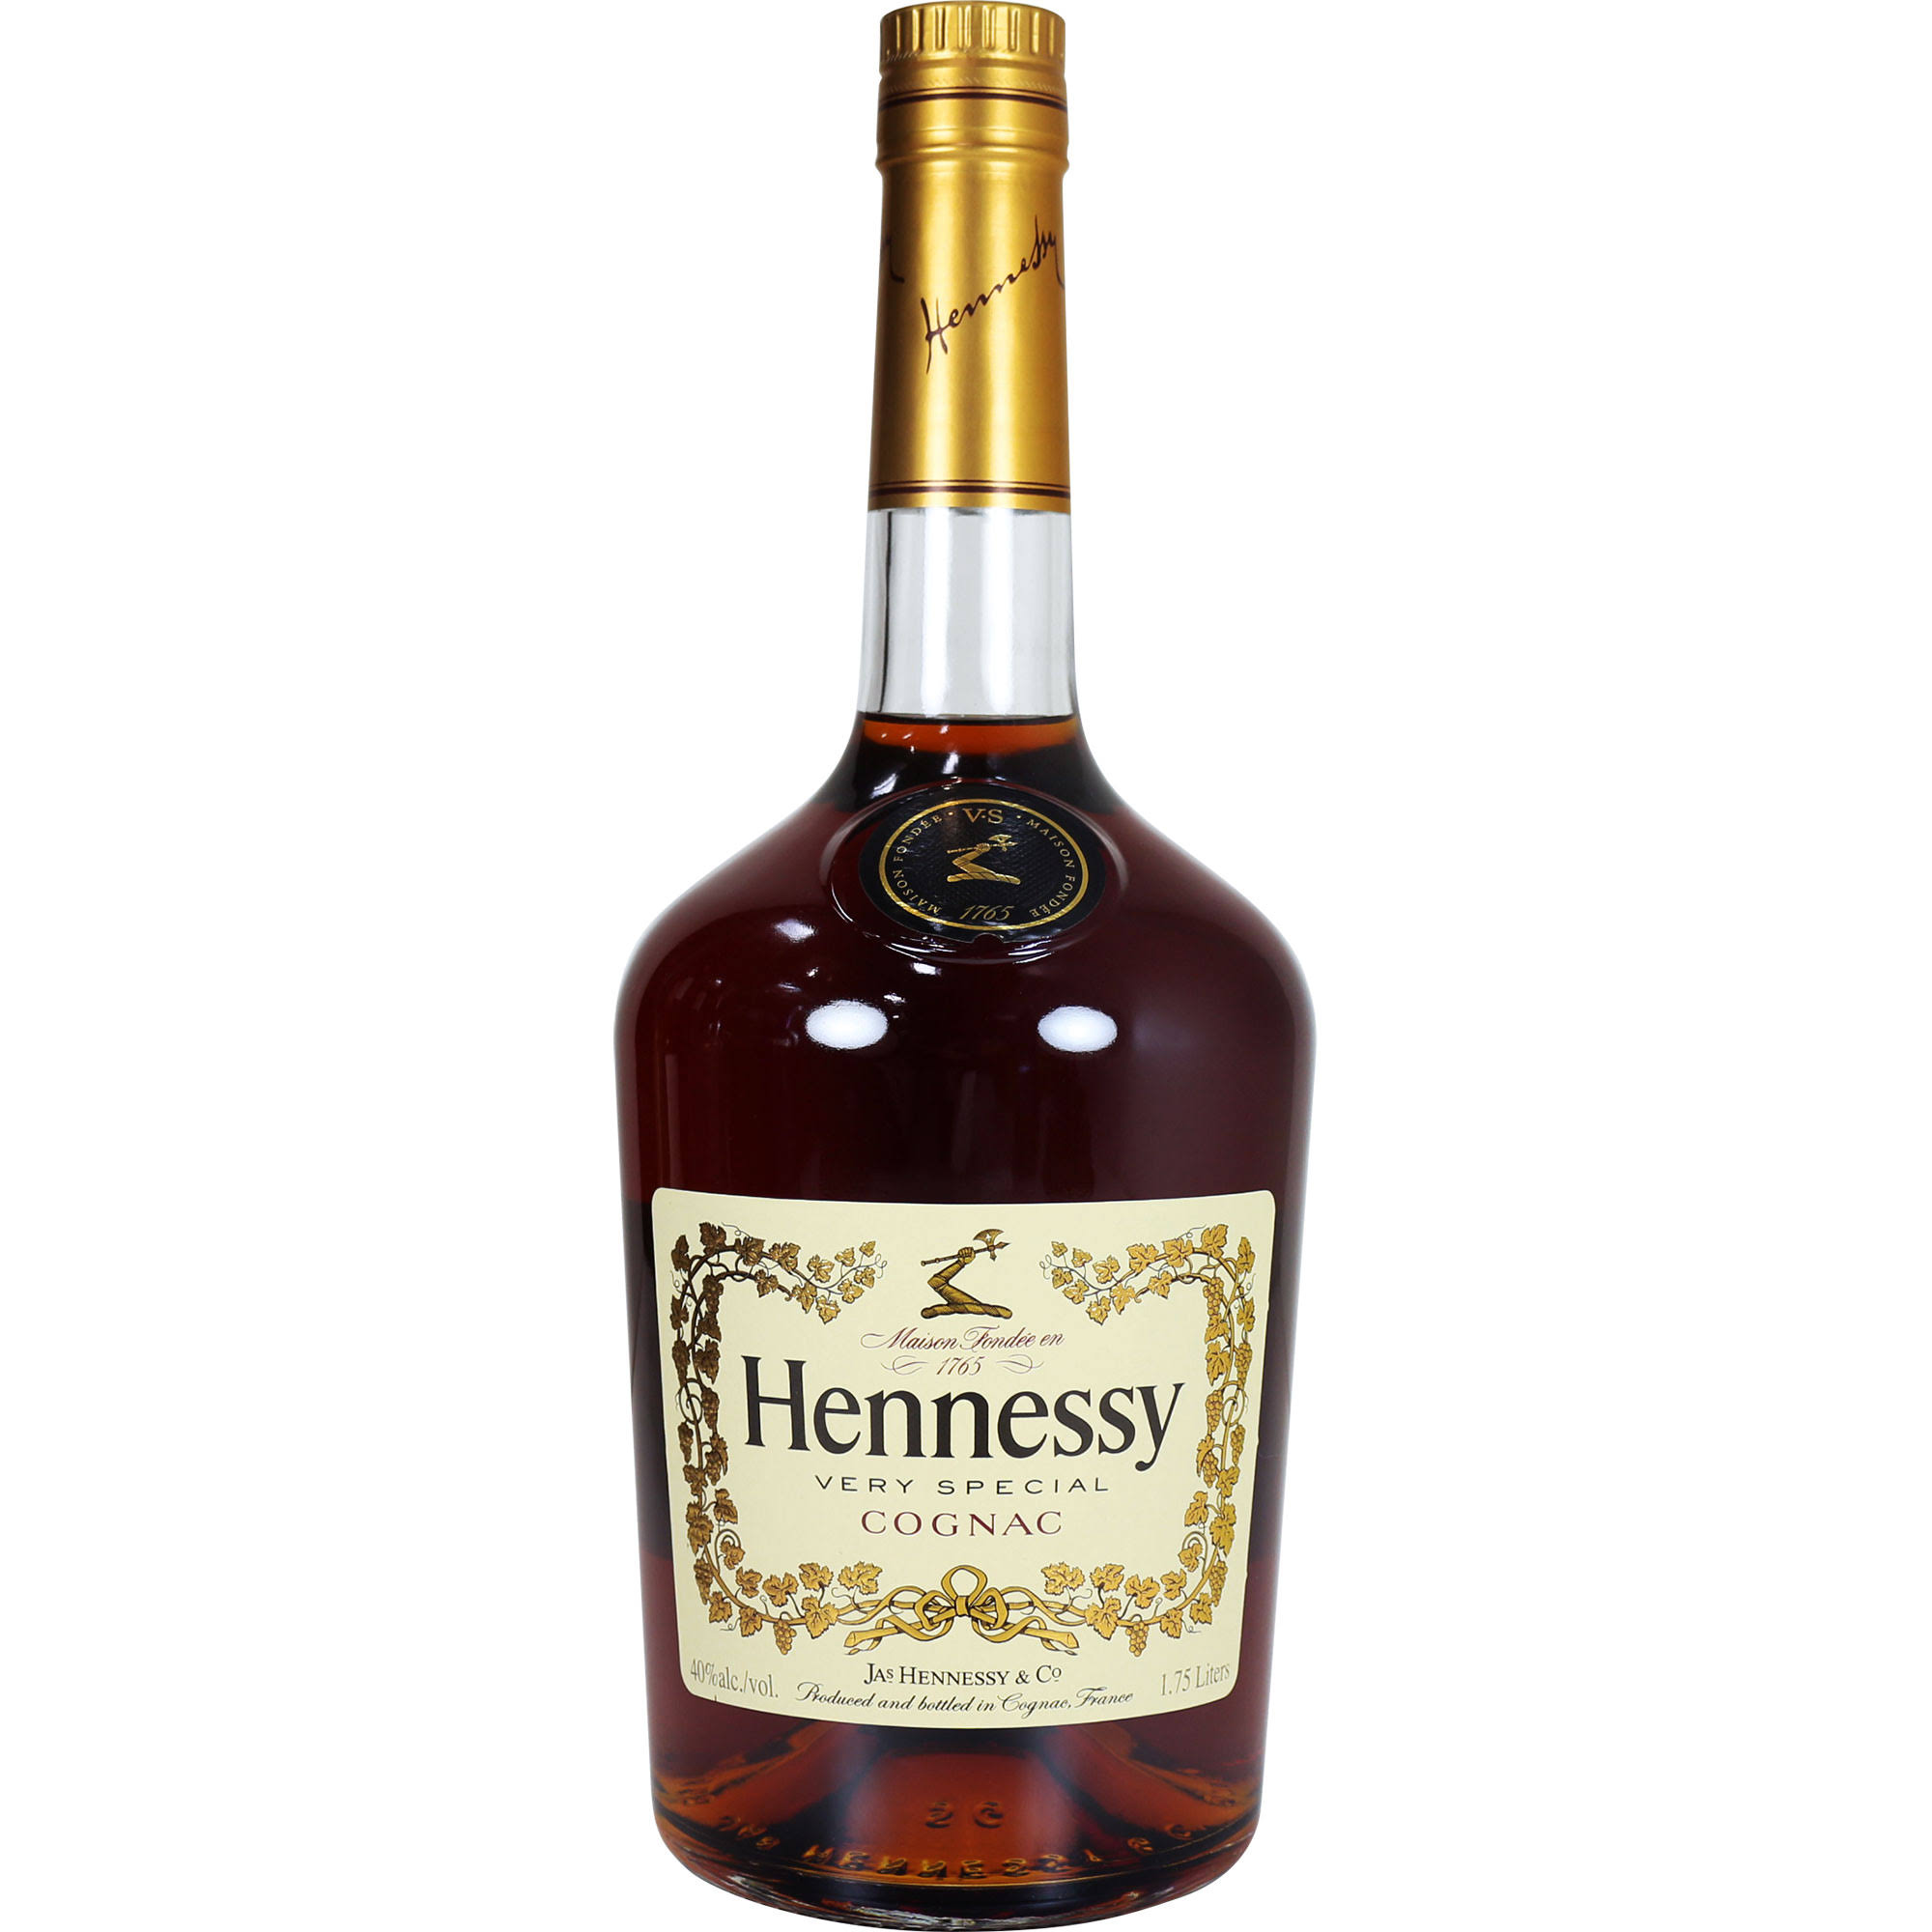 Hennessy VS Cognac 1750 mL bottle